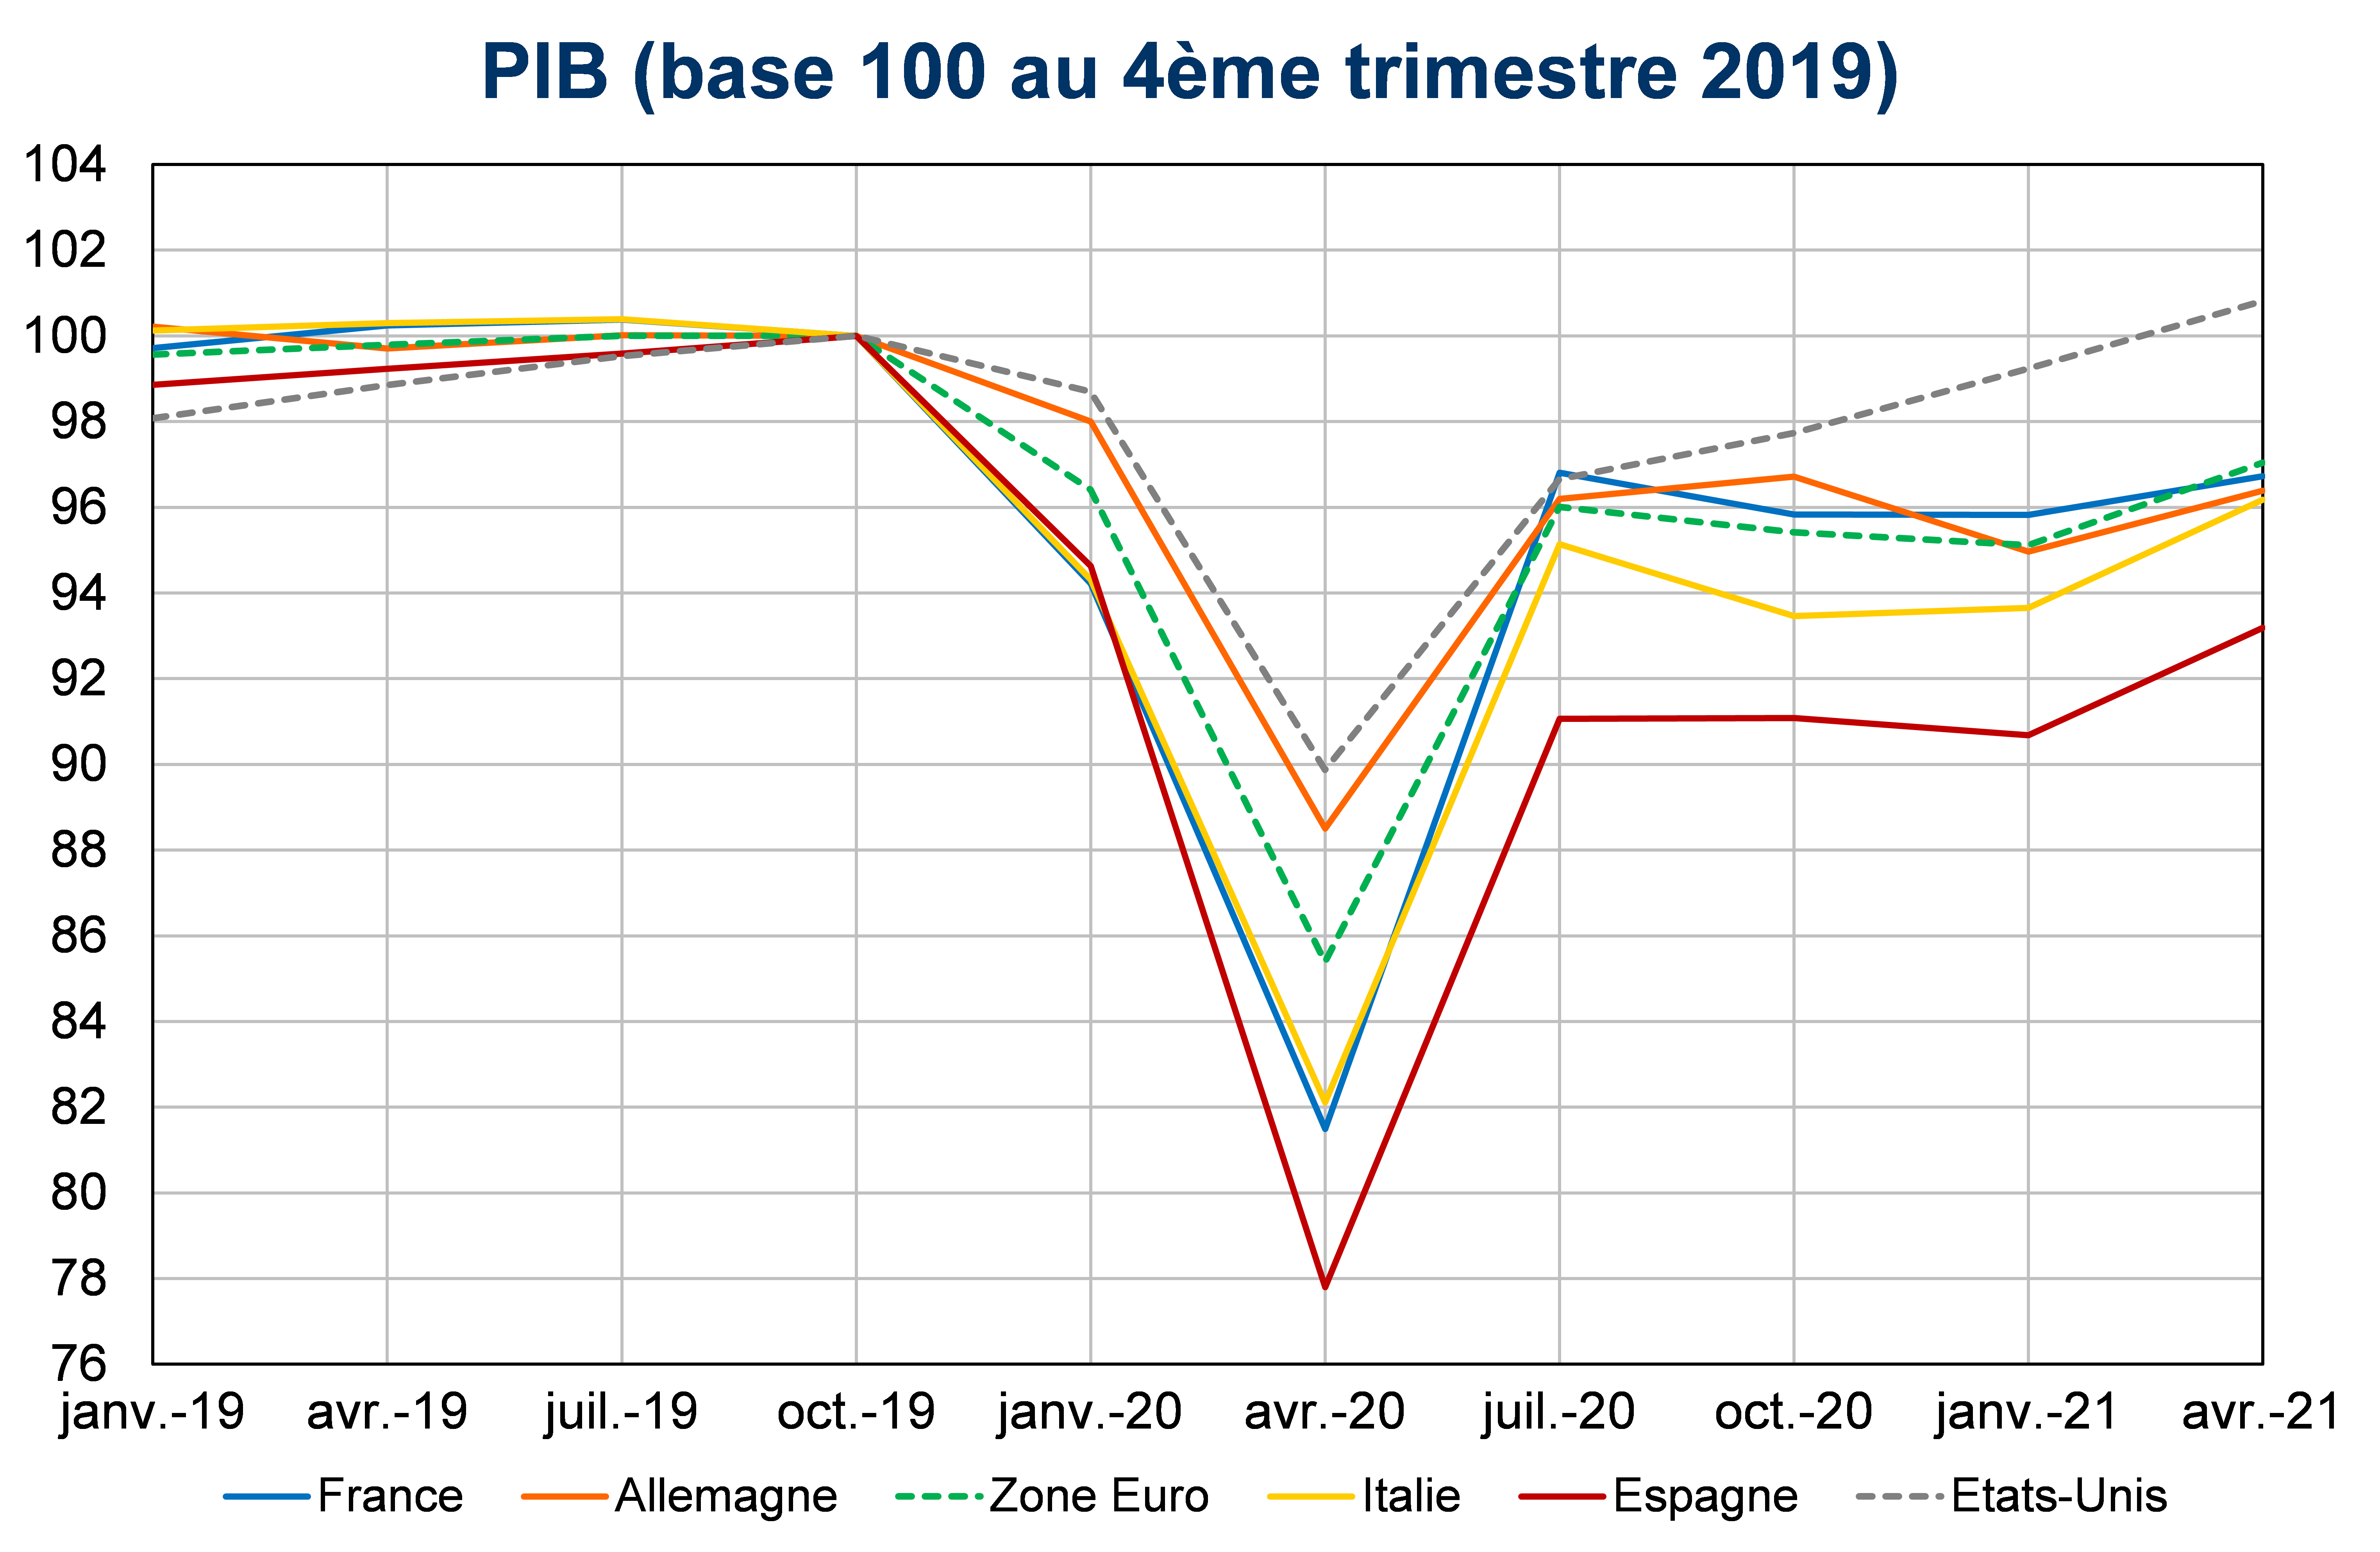 PIB base 100 au quatrième trimestre 2019